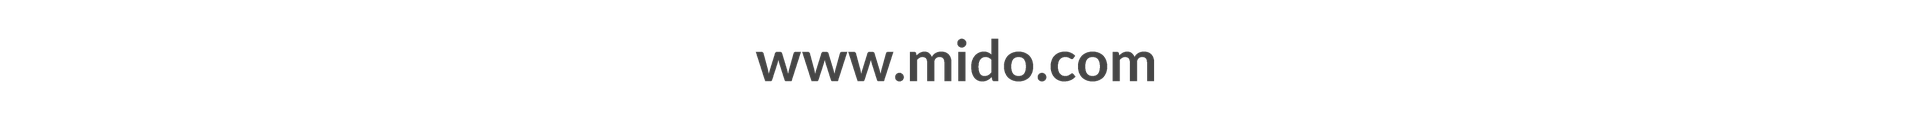 www.mido.com